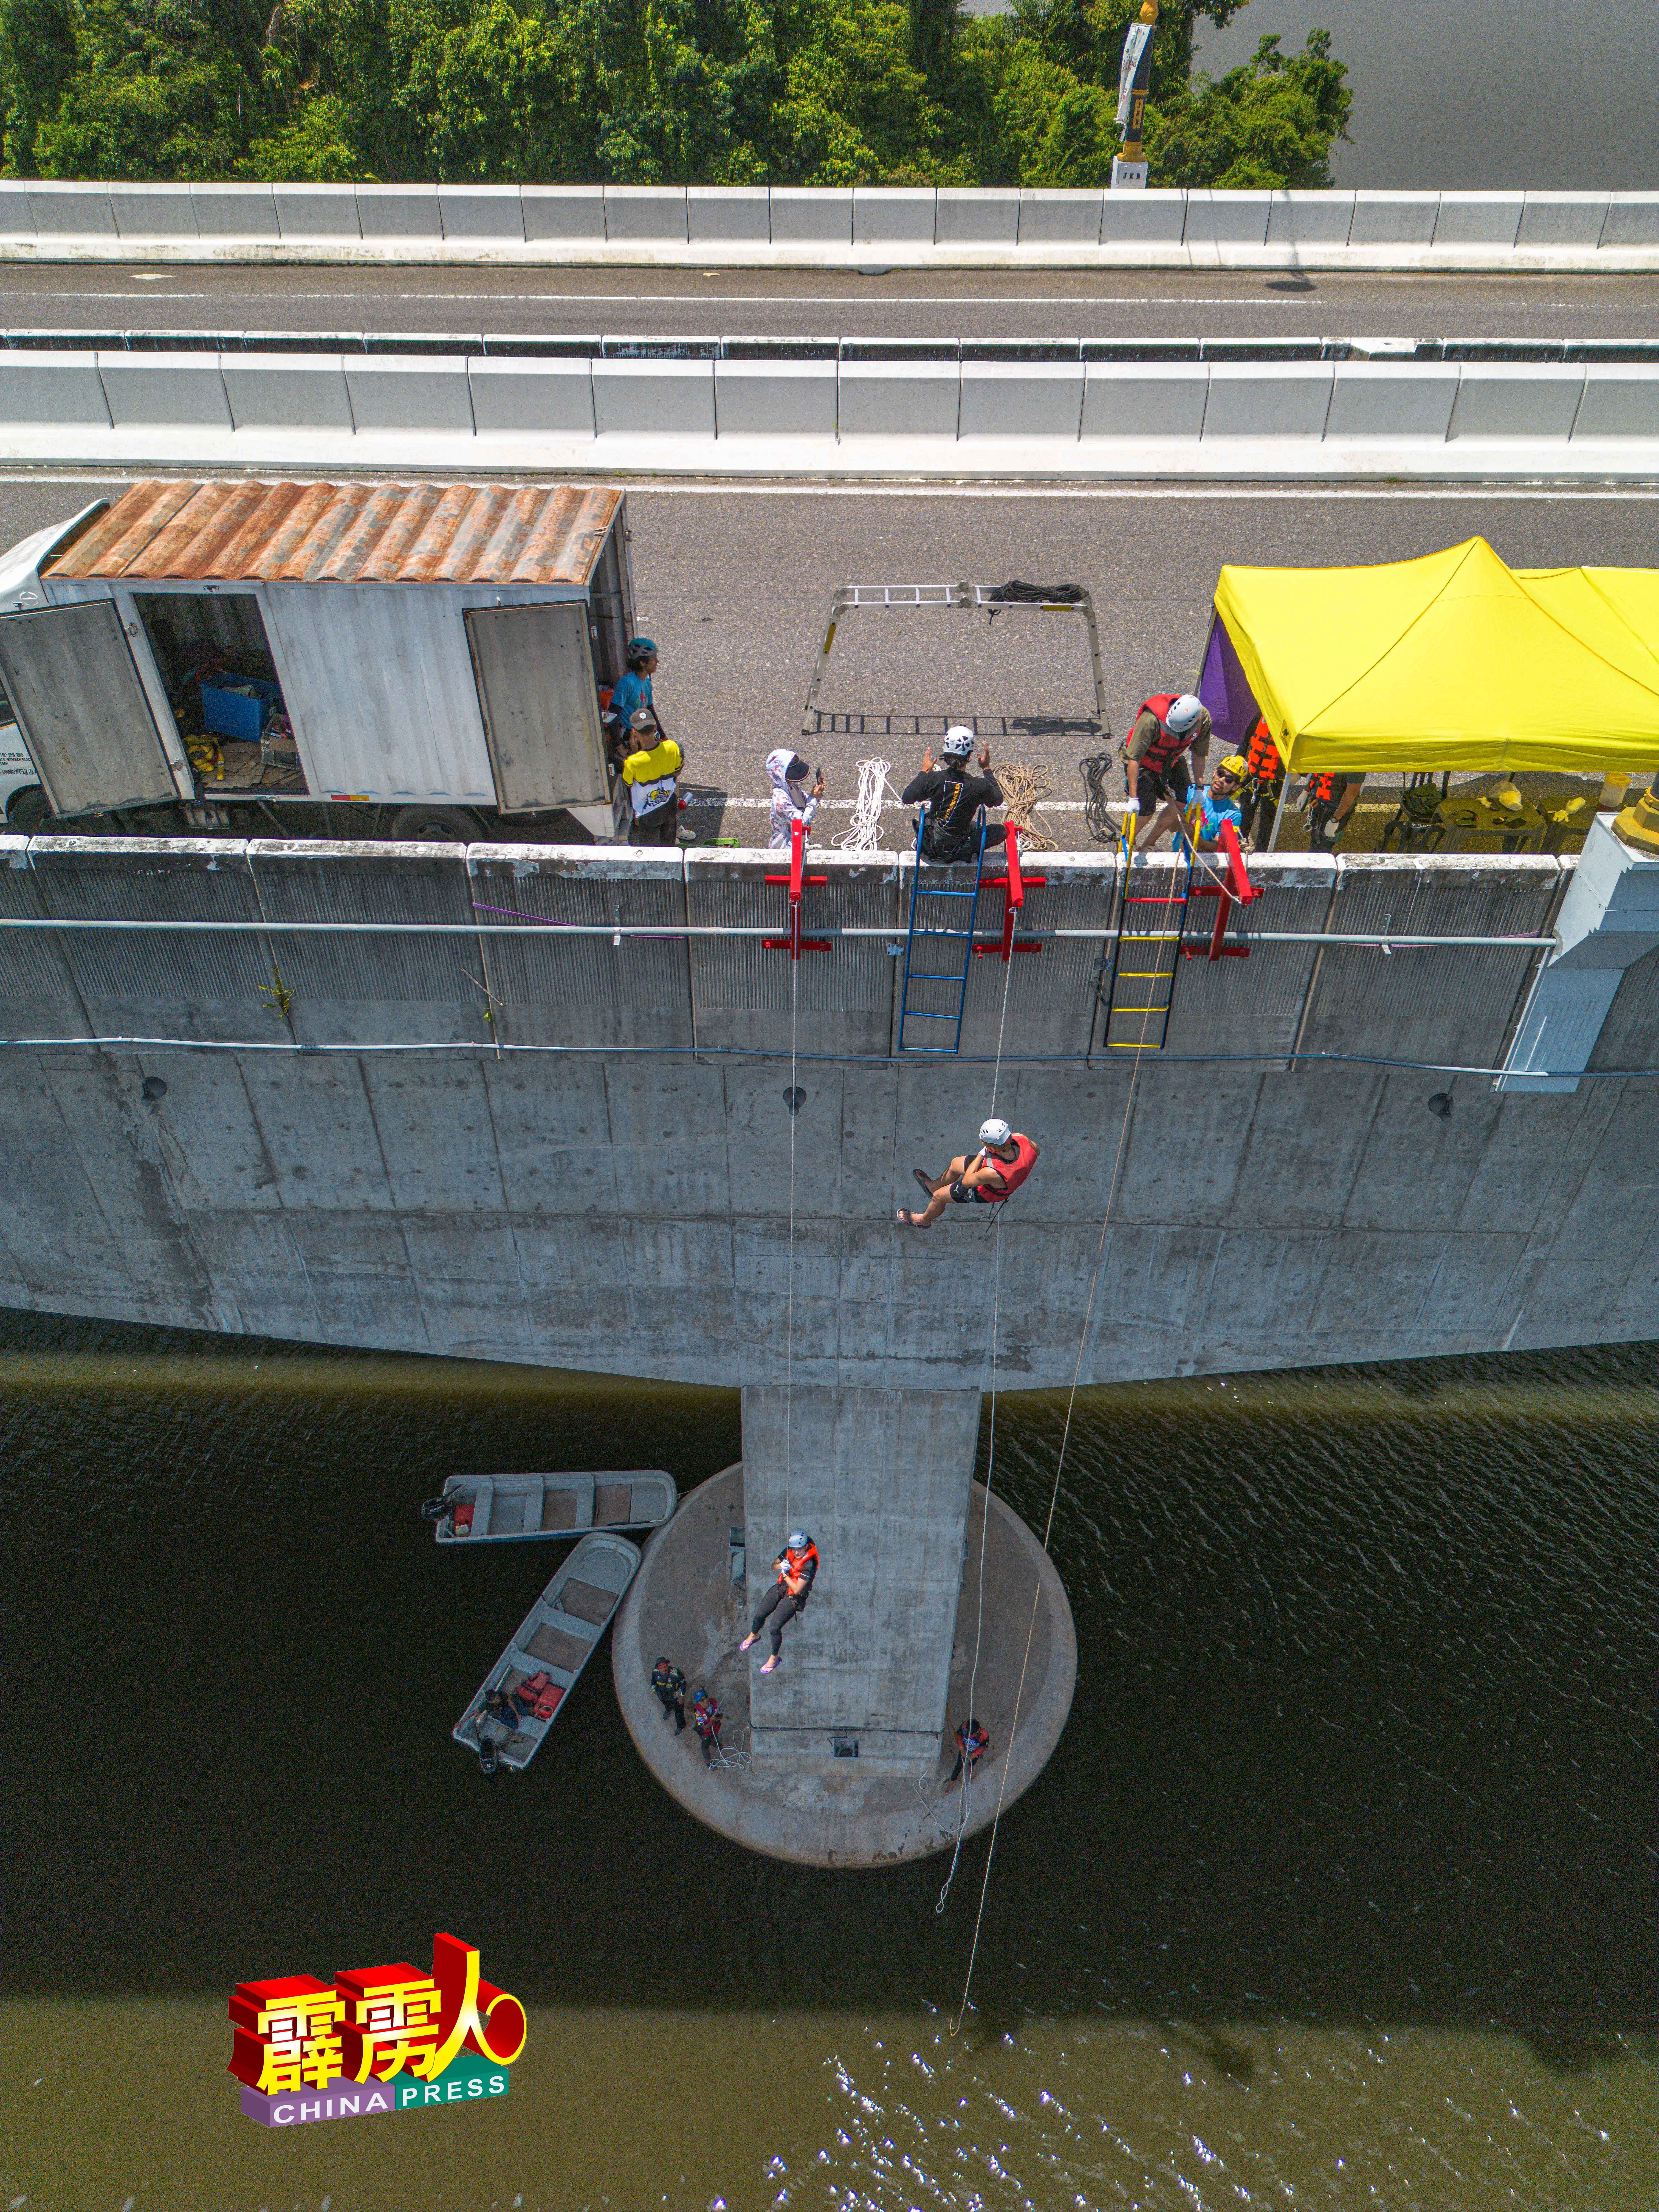 绳索垂降 （Abseiling）项目，就在横跨拉班湖的霹雳苏丹兹林桥上举行，安全措施估足，紧张又刺激。